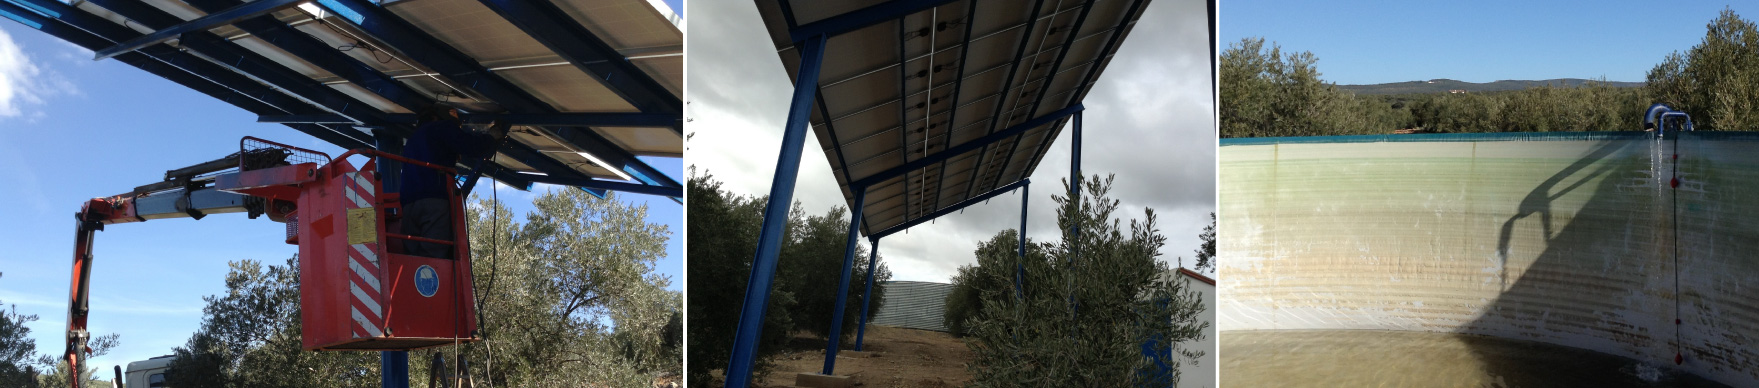 Instalación de Bombeo Solar | Fernández Campos Montajes Eléctricos S.L.